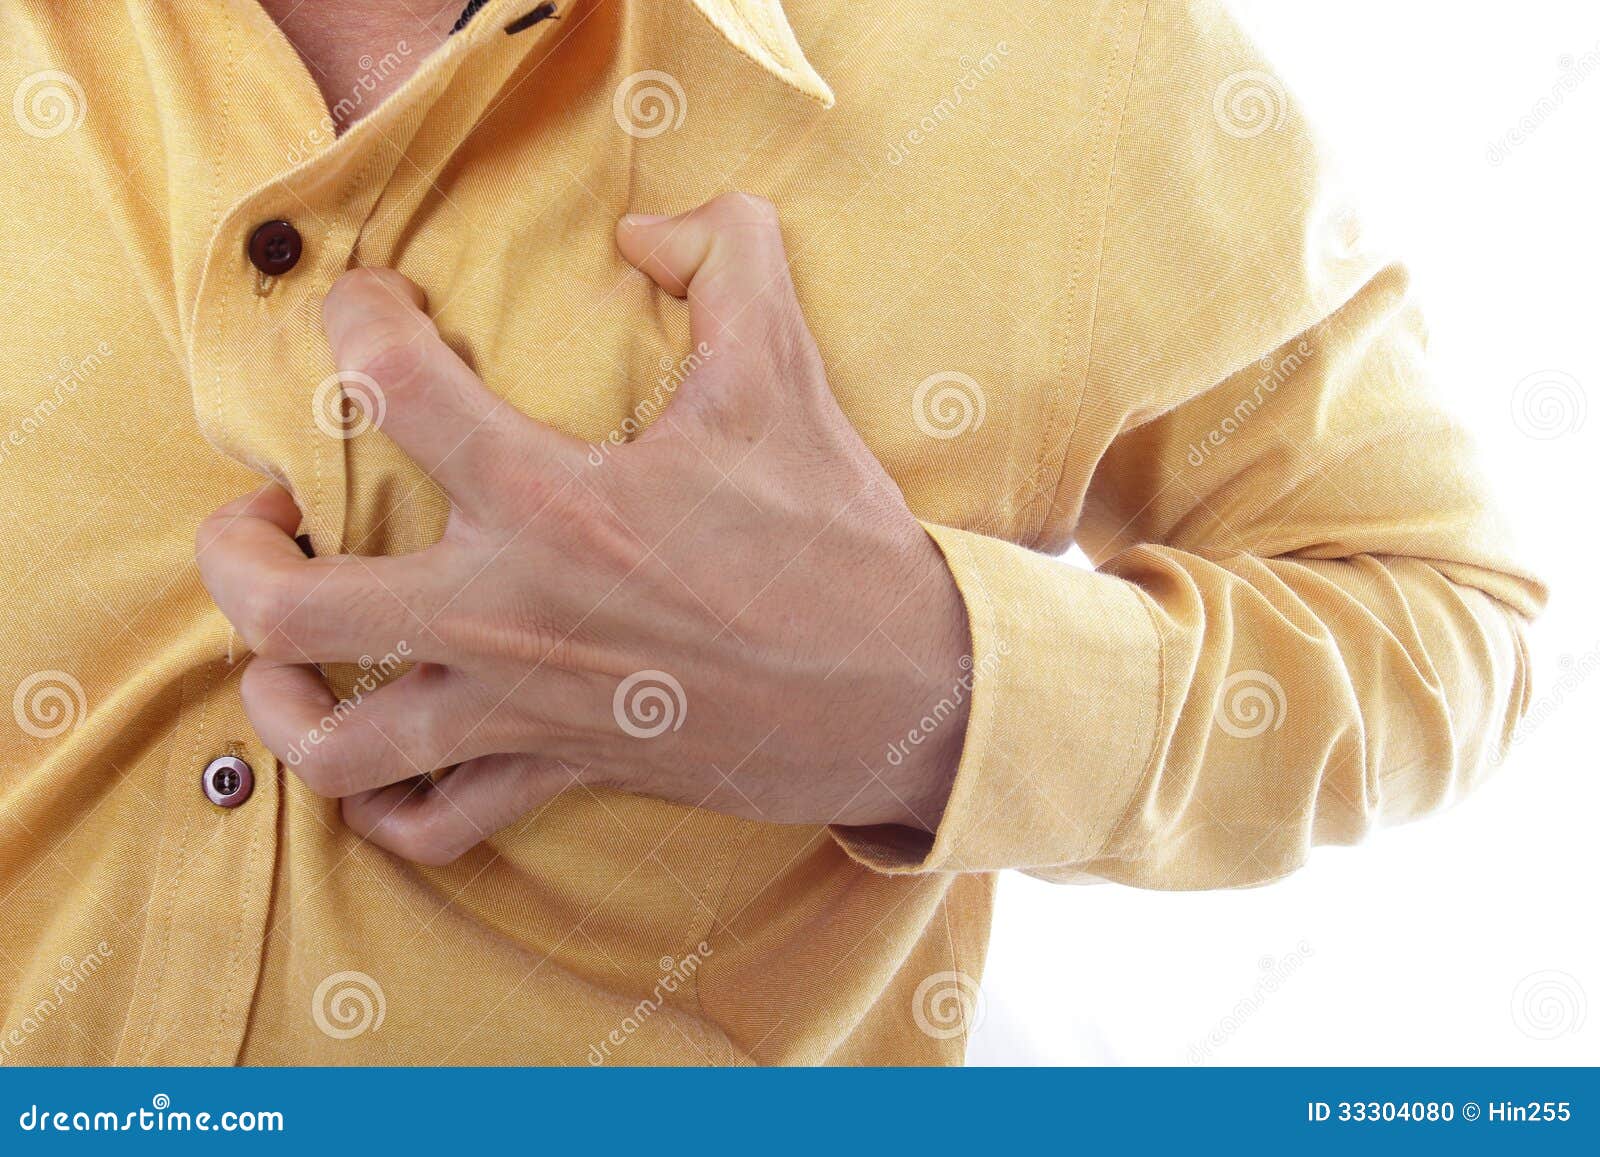 女性身體不舒服捂住胸口心臟疼圖片素材-JPG圖片尺寸6720 × 4480px-高清圖案501683949-zh.lovepik.com